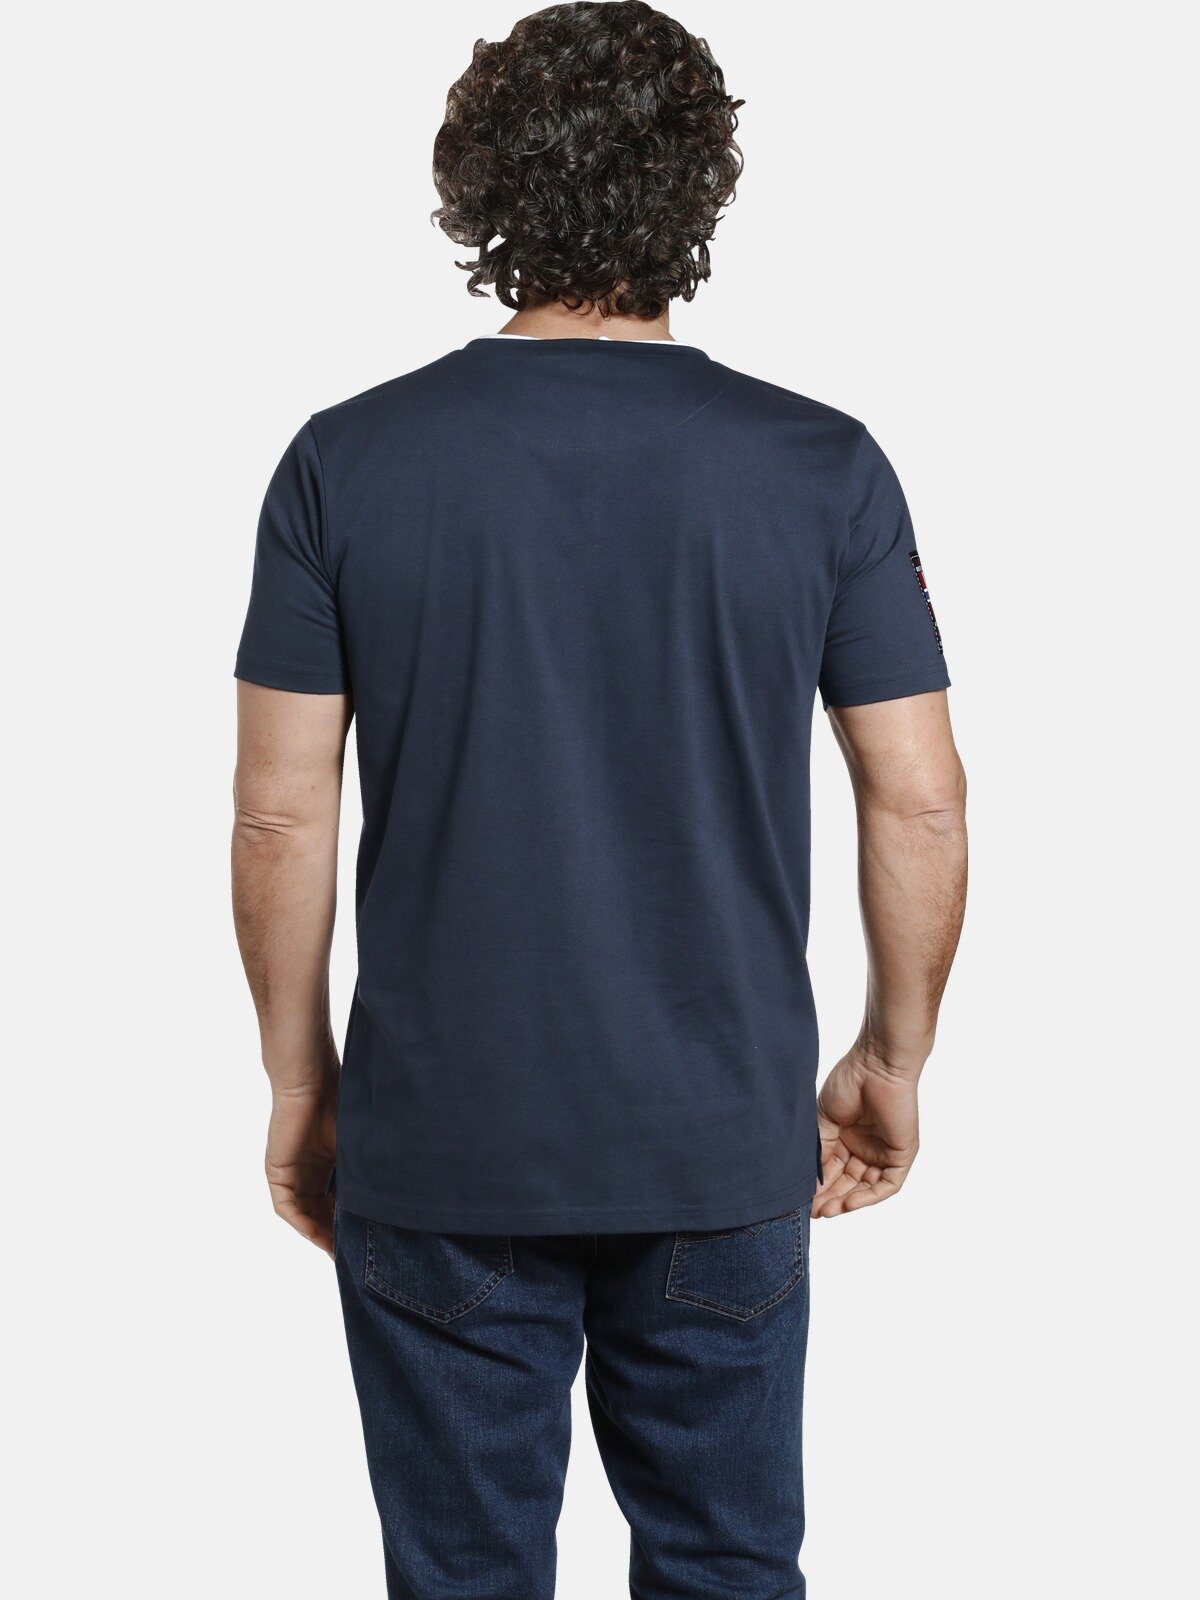 Knopfleiste mit dunkelblau 3-fach T-Shirt PEDER Vanderstorm Jan